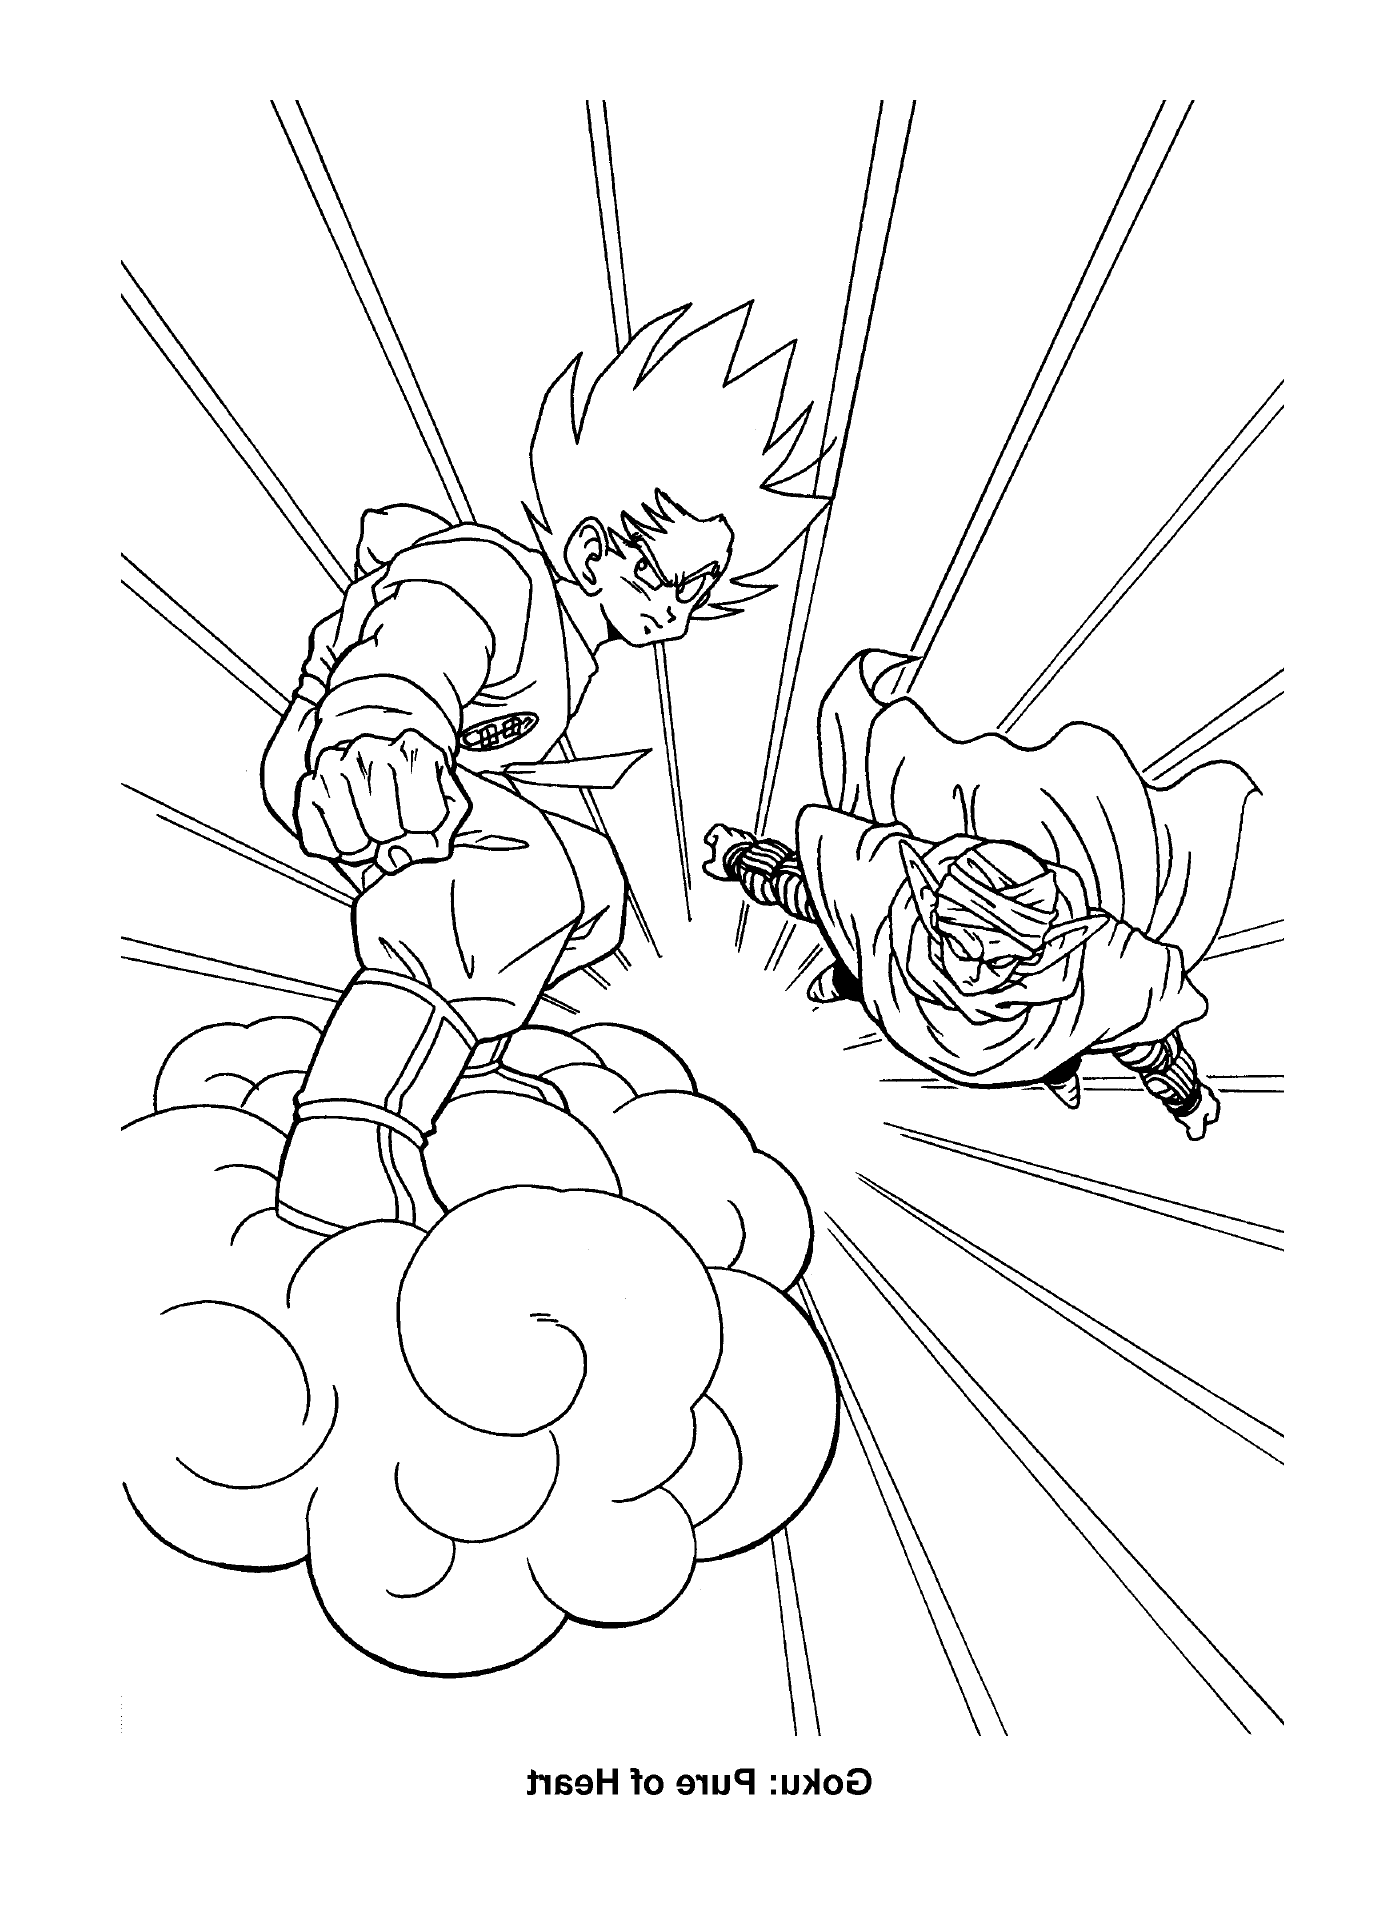  Goku und Vegeta, eine legendäre Allianz 